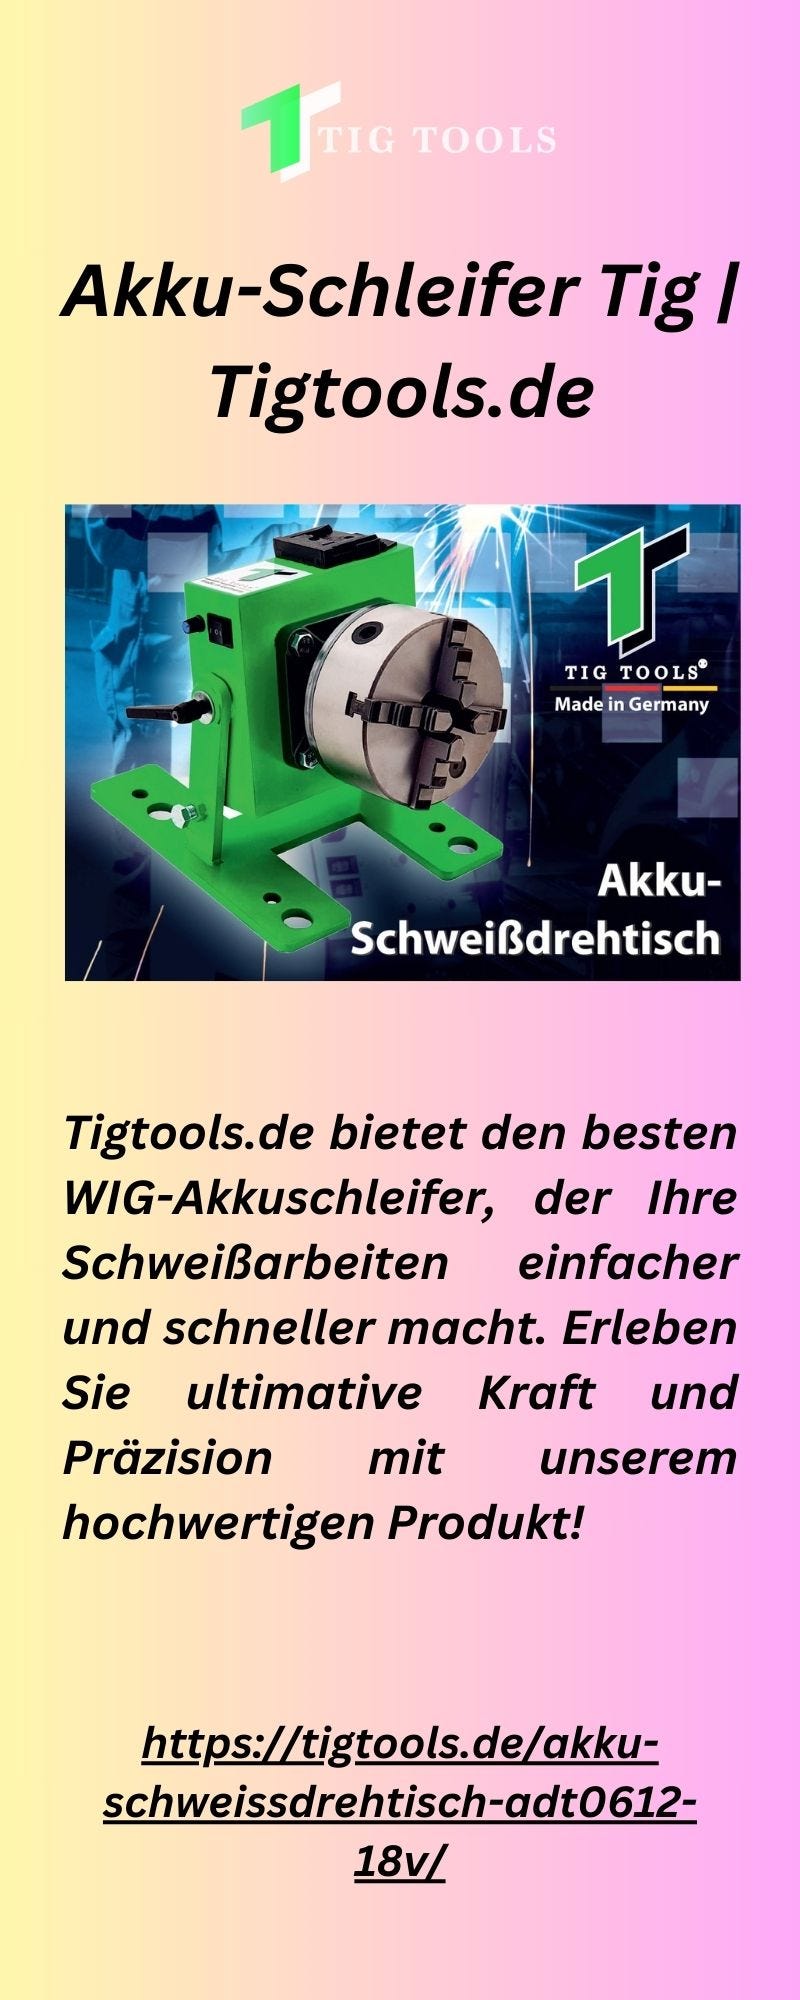 Akku-Schleifer Tig | Tigtools.de - Tig Tools - Medium